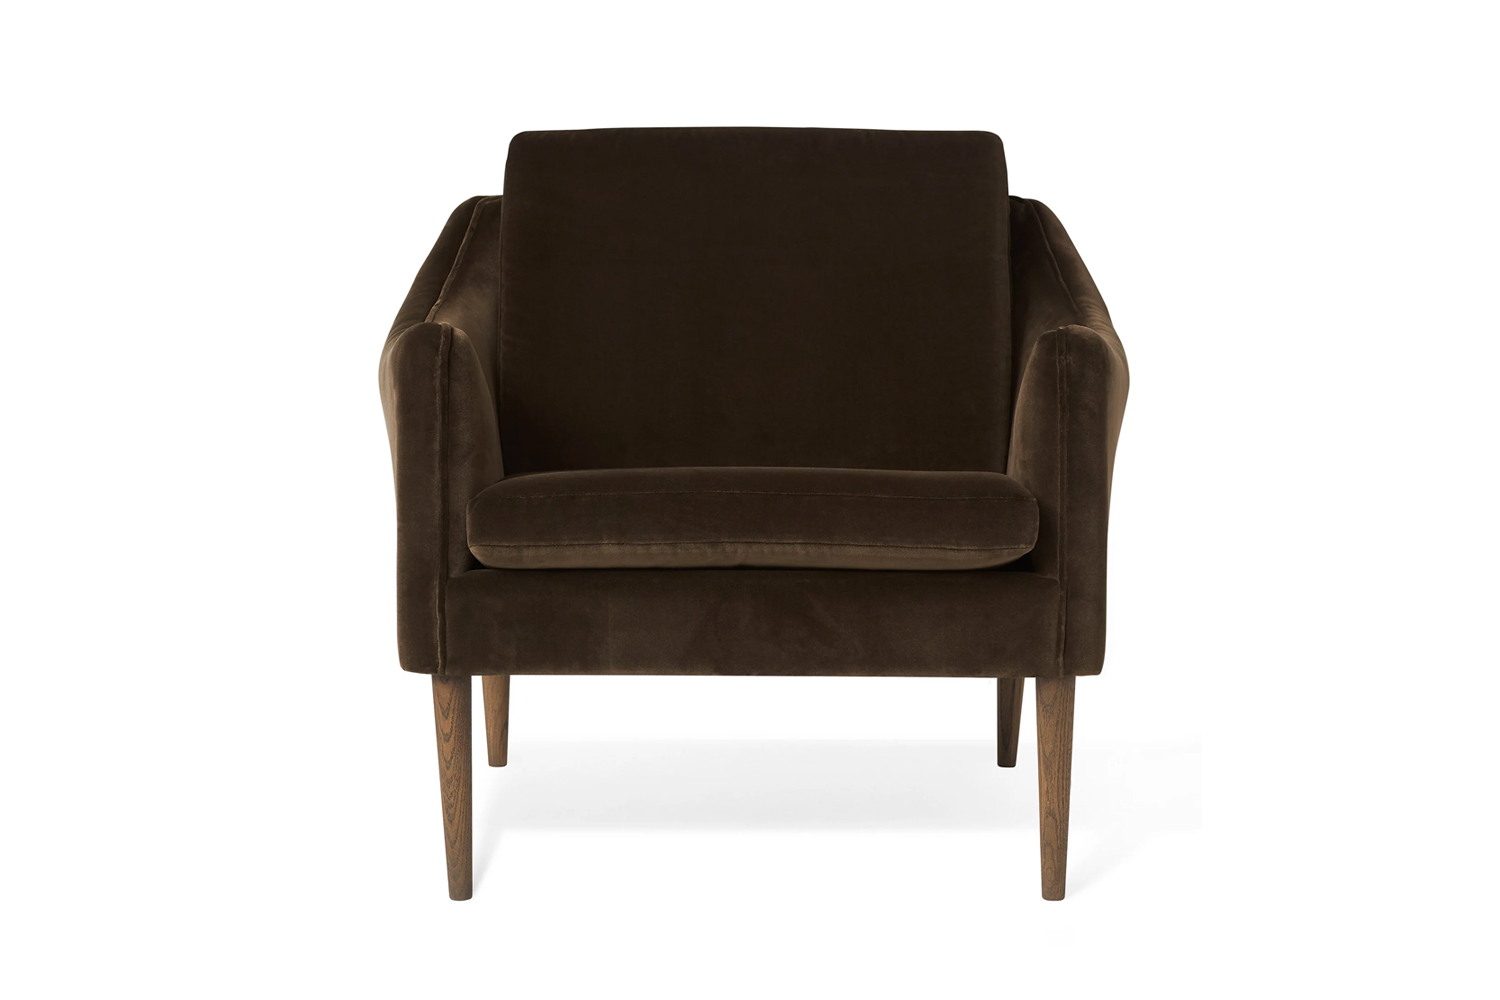 the mr. olsen lounge chair by hans olsen for warm nordic in java brown velvet i 16